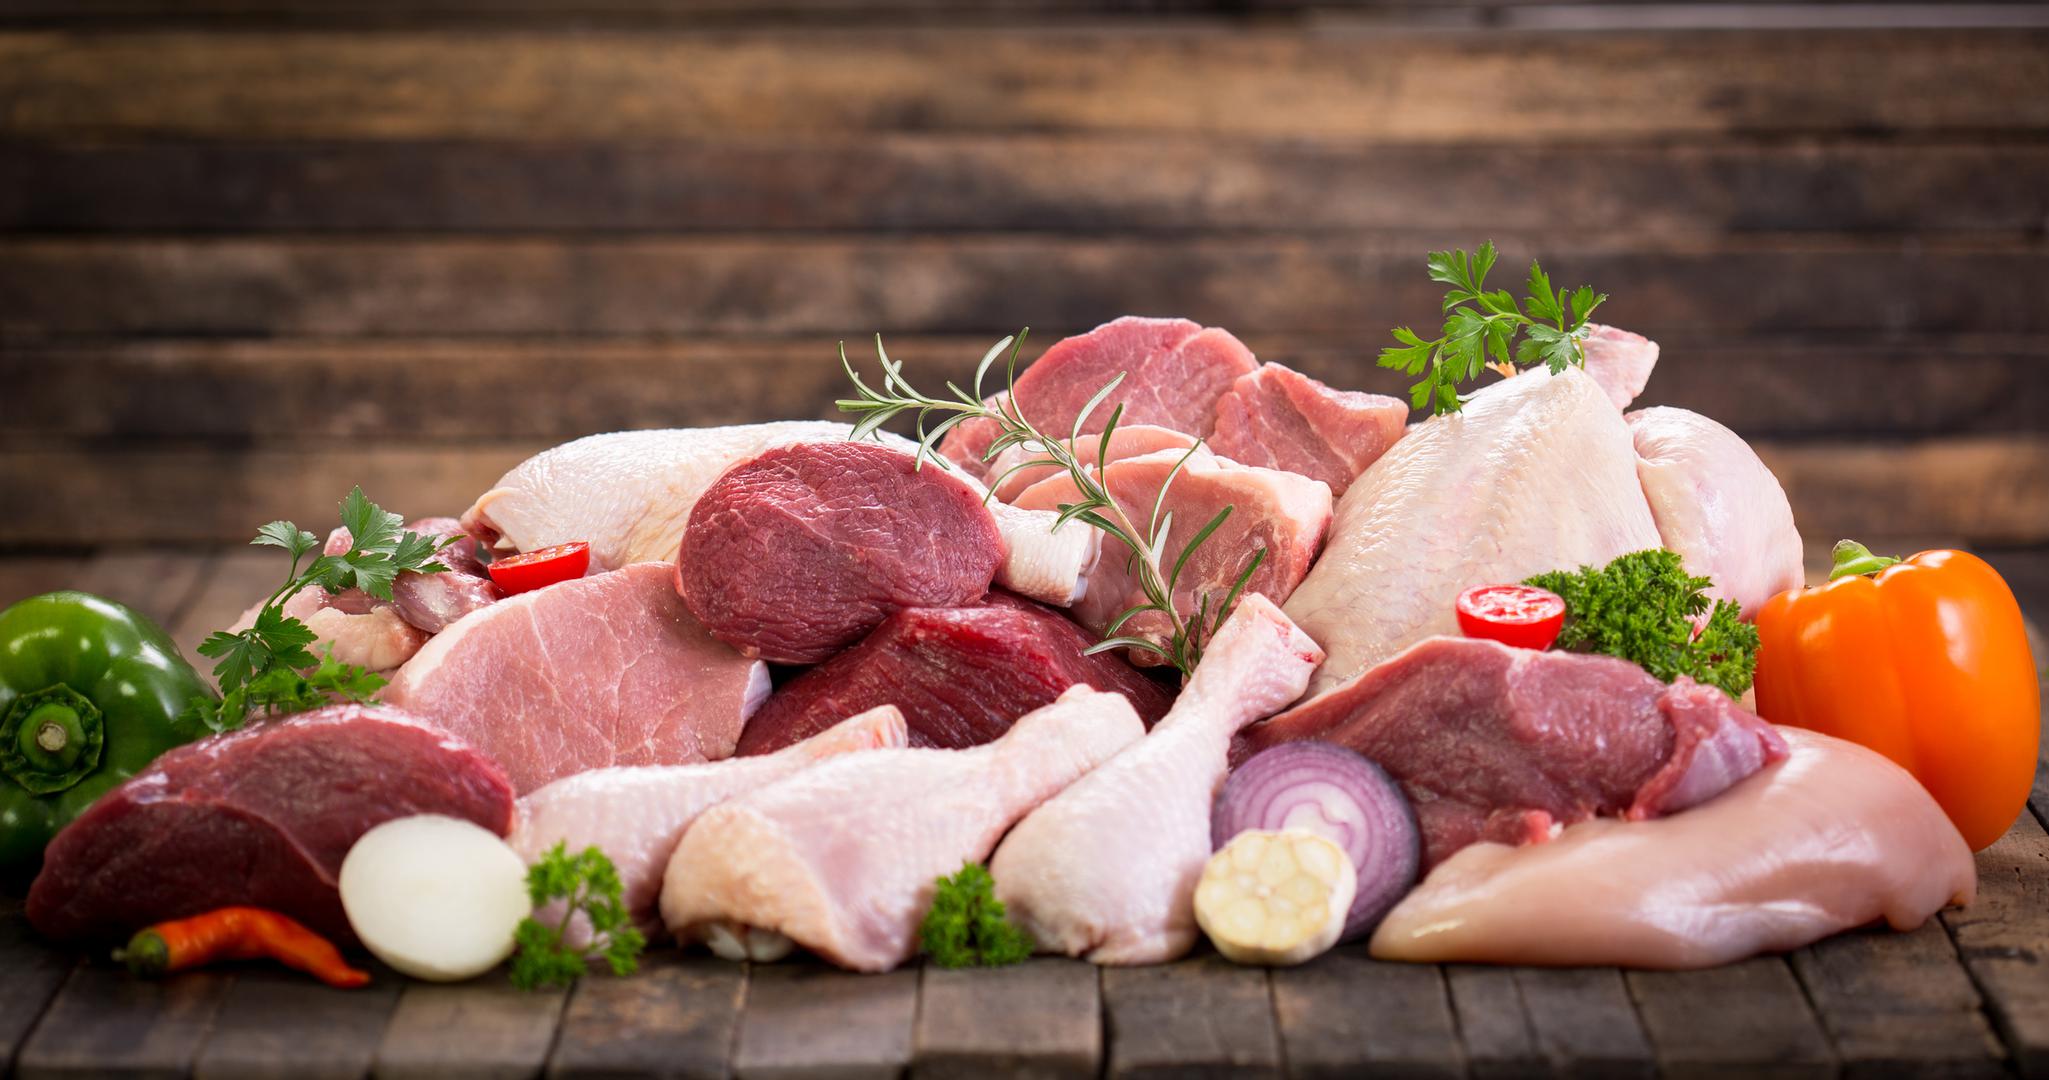 Pileće meso također ne bi trebalo podgrijavati jer sadrži veću gustoću proteinskog sastava od crvenog mesa, a prilikom podgrijavanja proteini se drugačije razgrađuju te mogu izazvati želučane tegobe. 